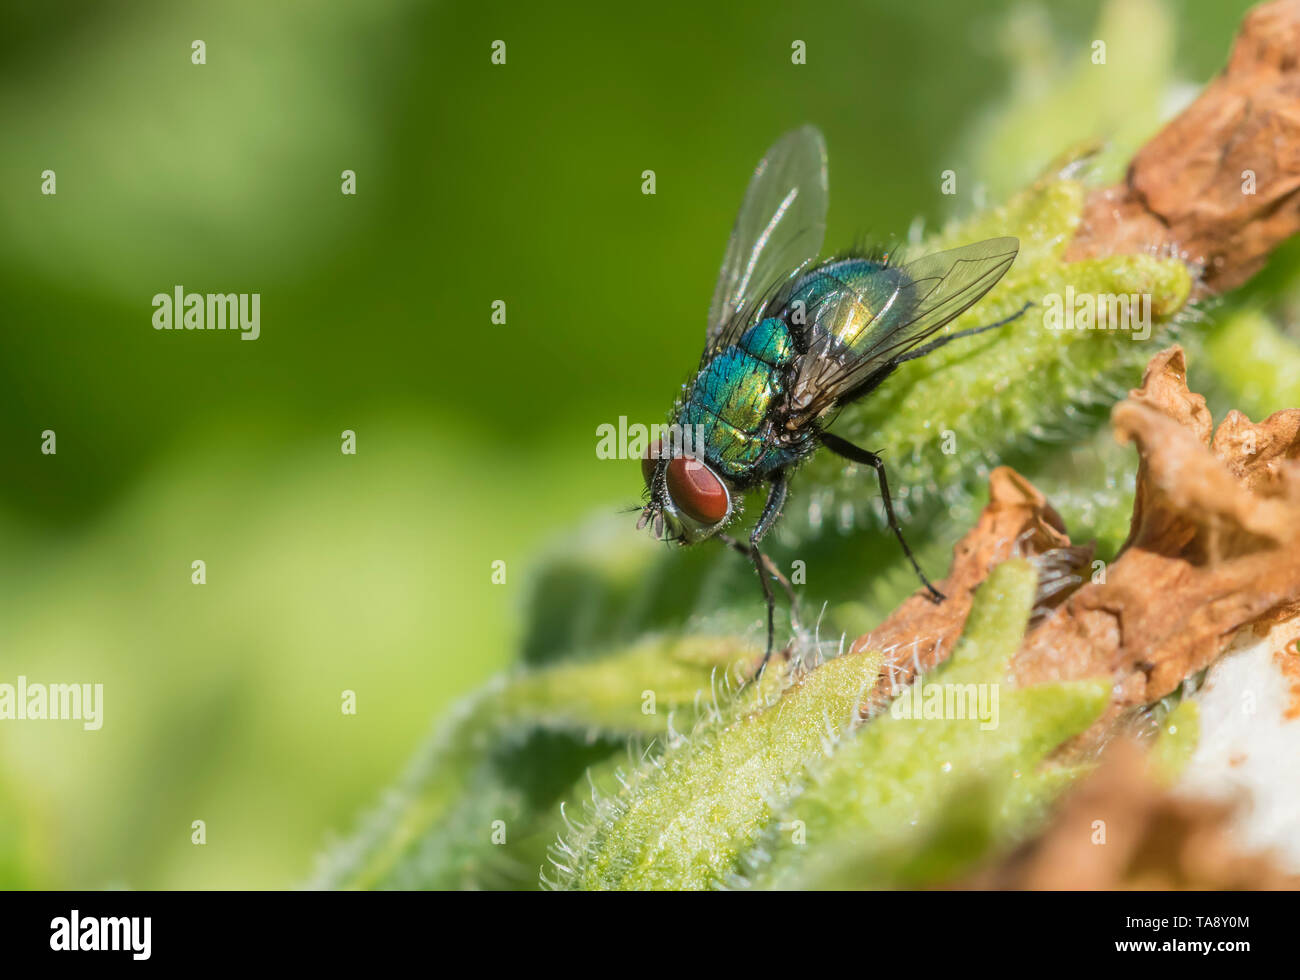 Libre d'une bouteille verte (mouche Lucilia sericata, Greenbottle fly) sur une feuille ou une plante au printemps (mai), West Sussex, UK. Greenbottle voler. Banque D'Images